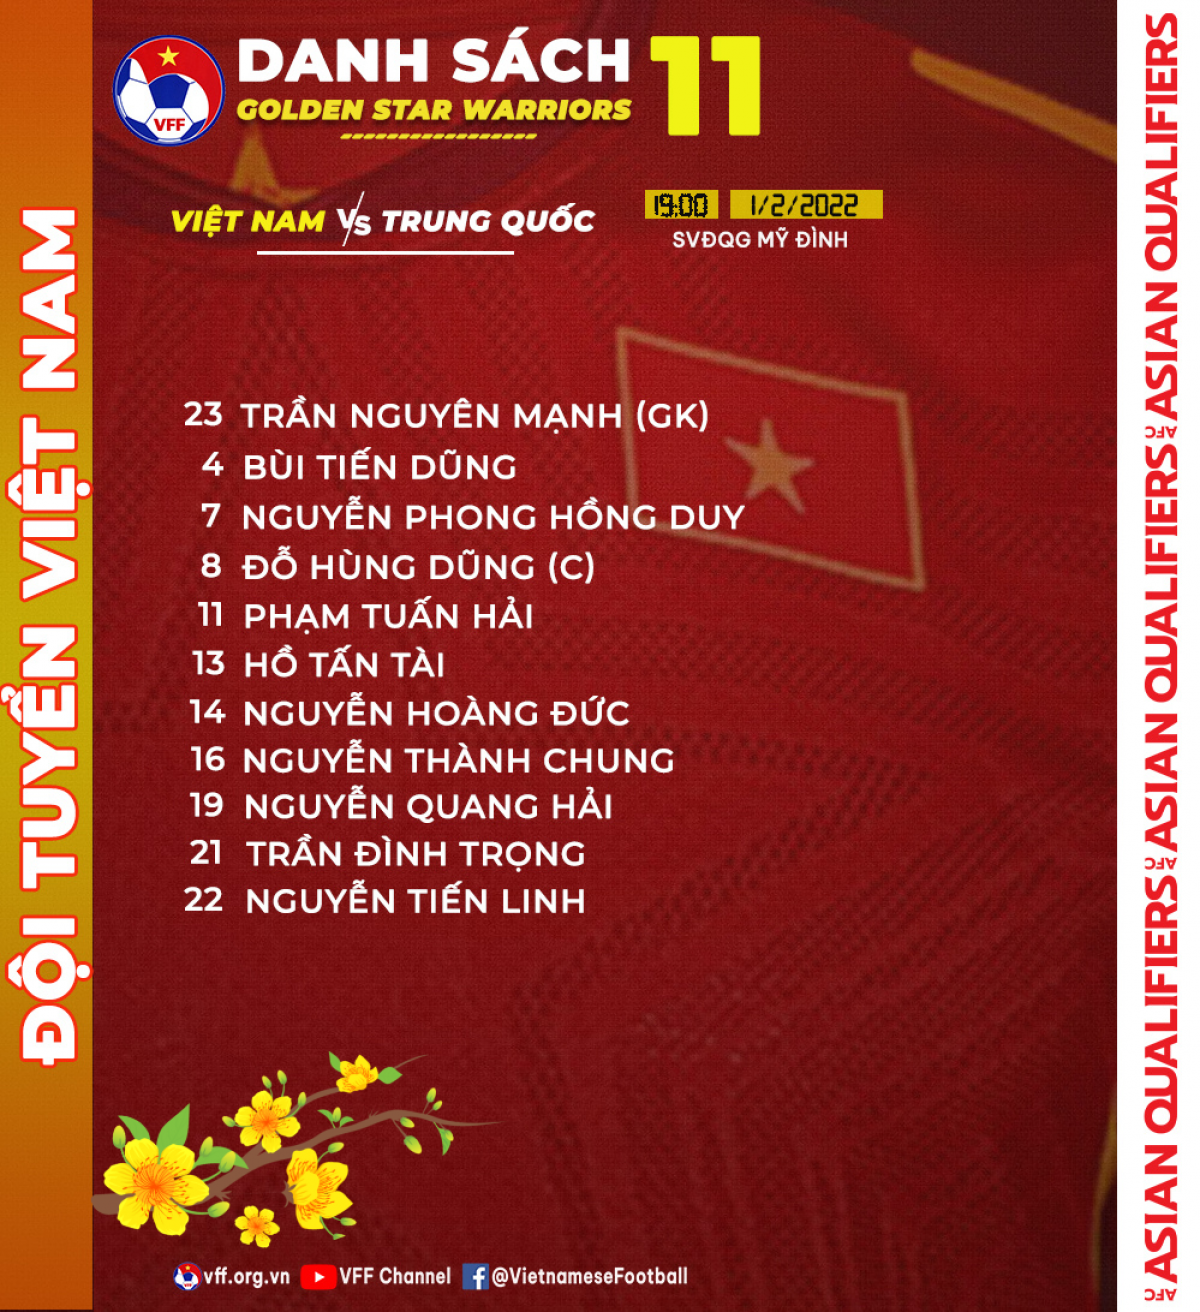 Danh sách thi đấu chính thức của ĐTVN trong trận gặp Trung Quốc